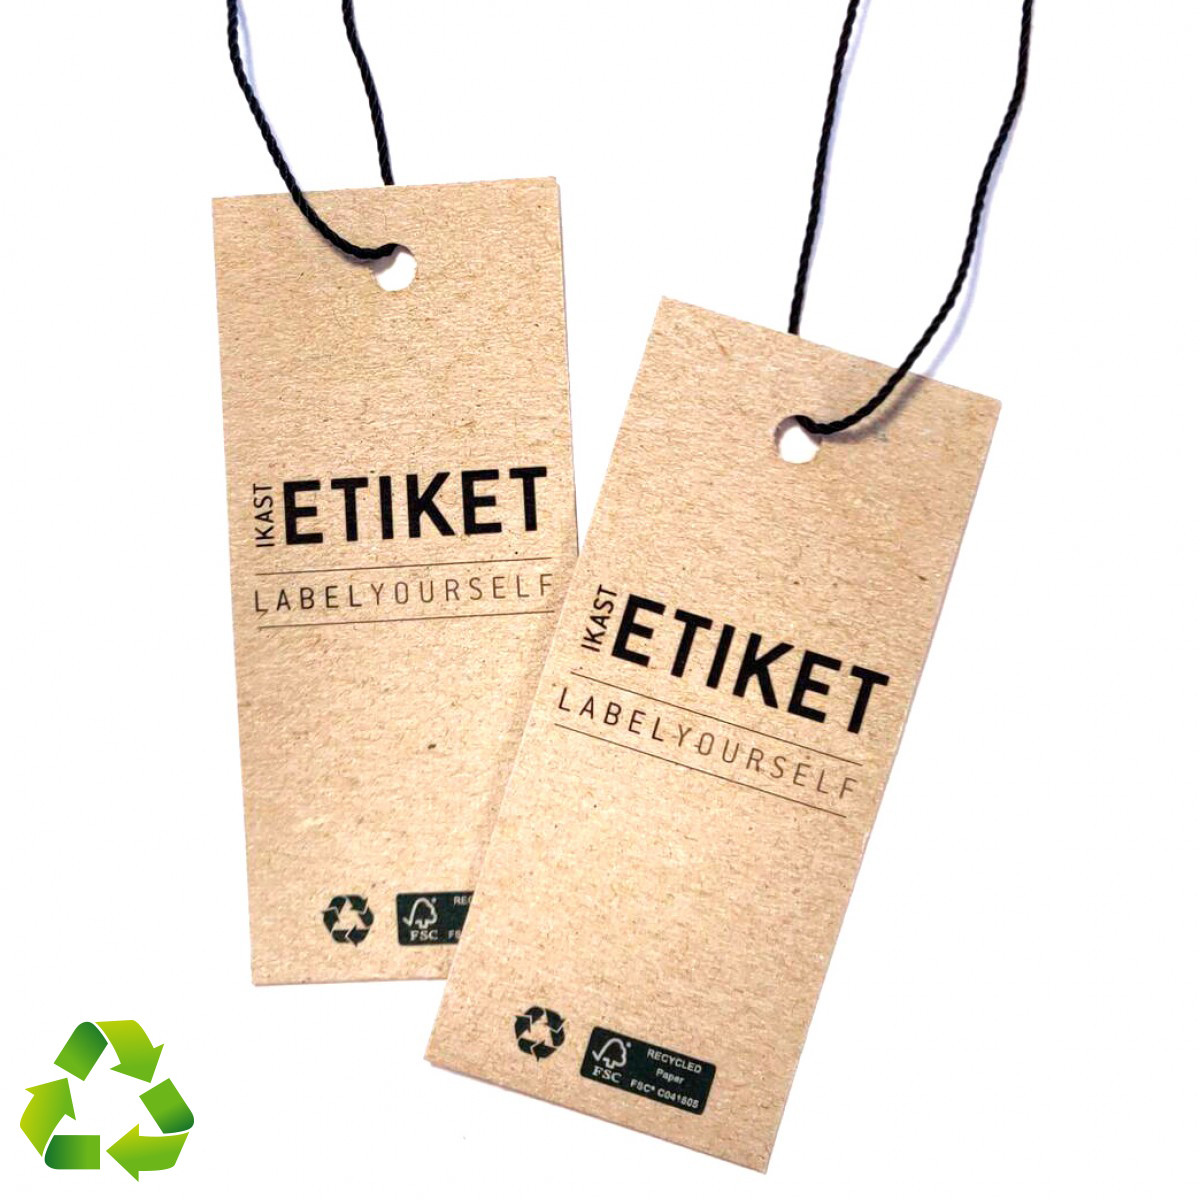 Etiquetas colgantes sostenibles fabricadas con papel FSC